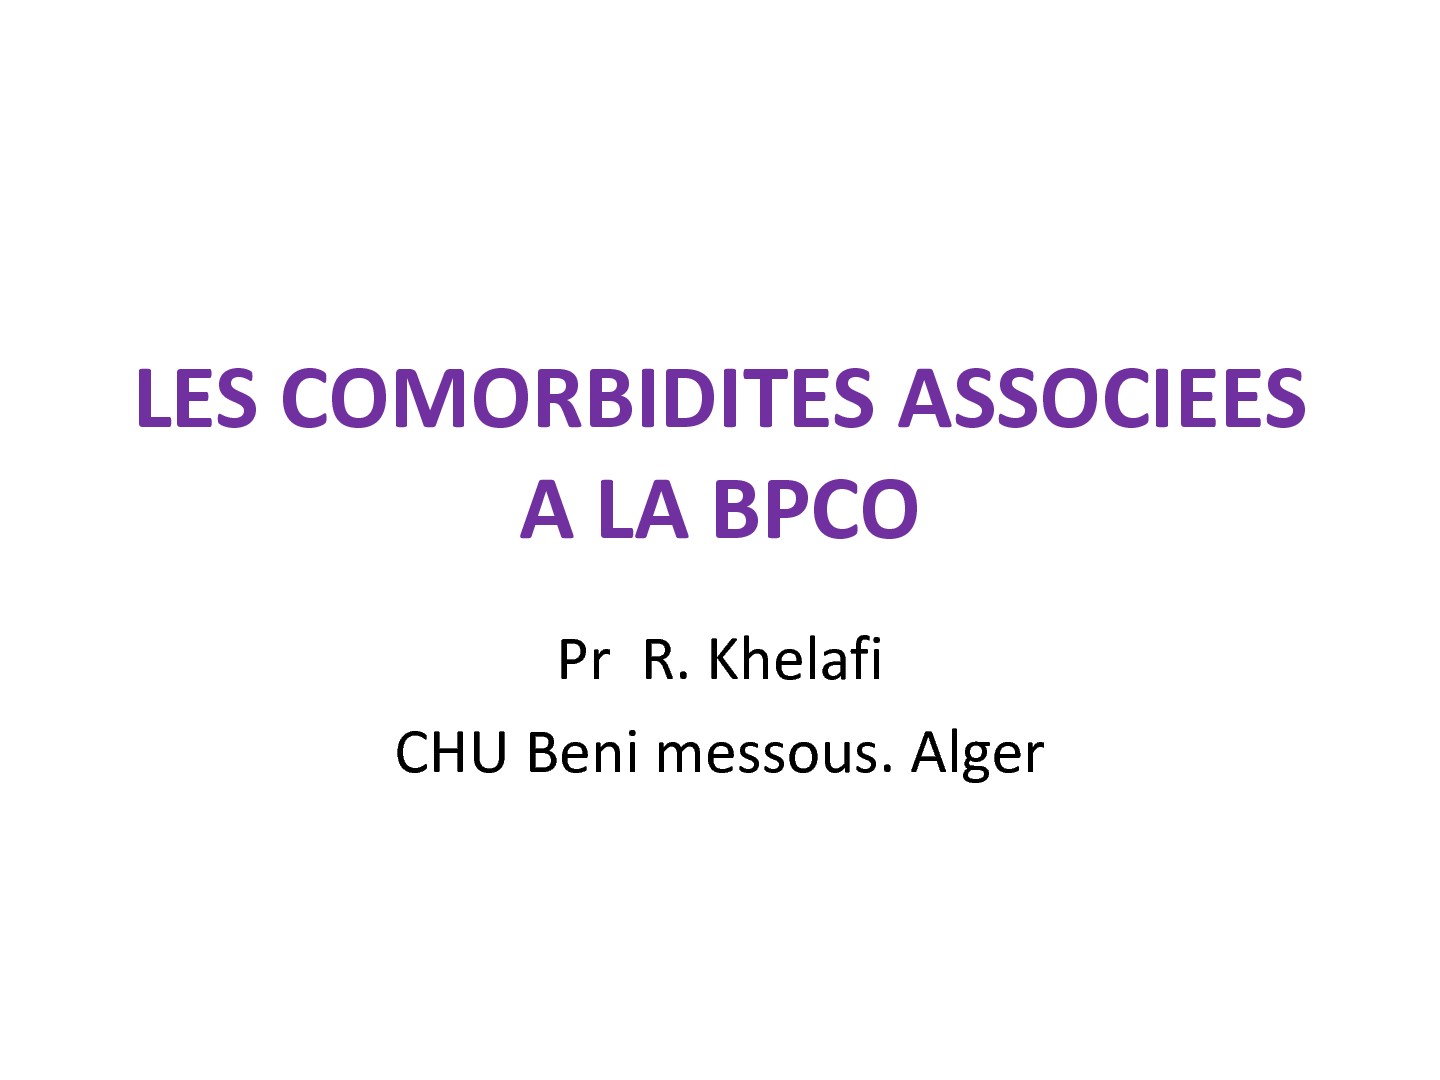 Les comorbidités associées à la BPCO. R. Khelafi